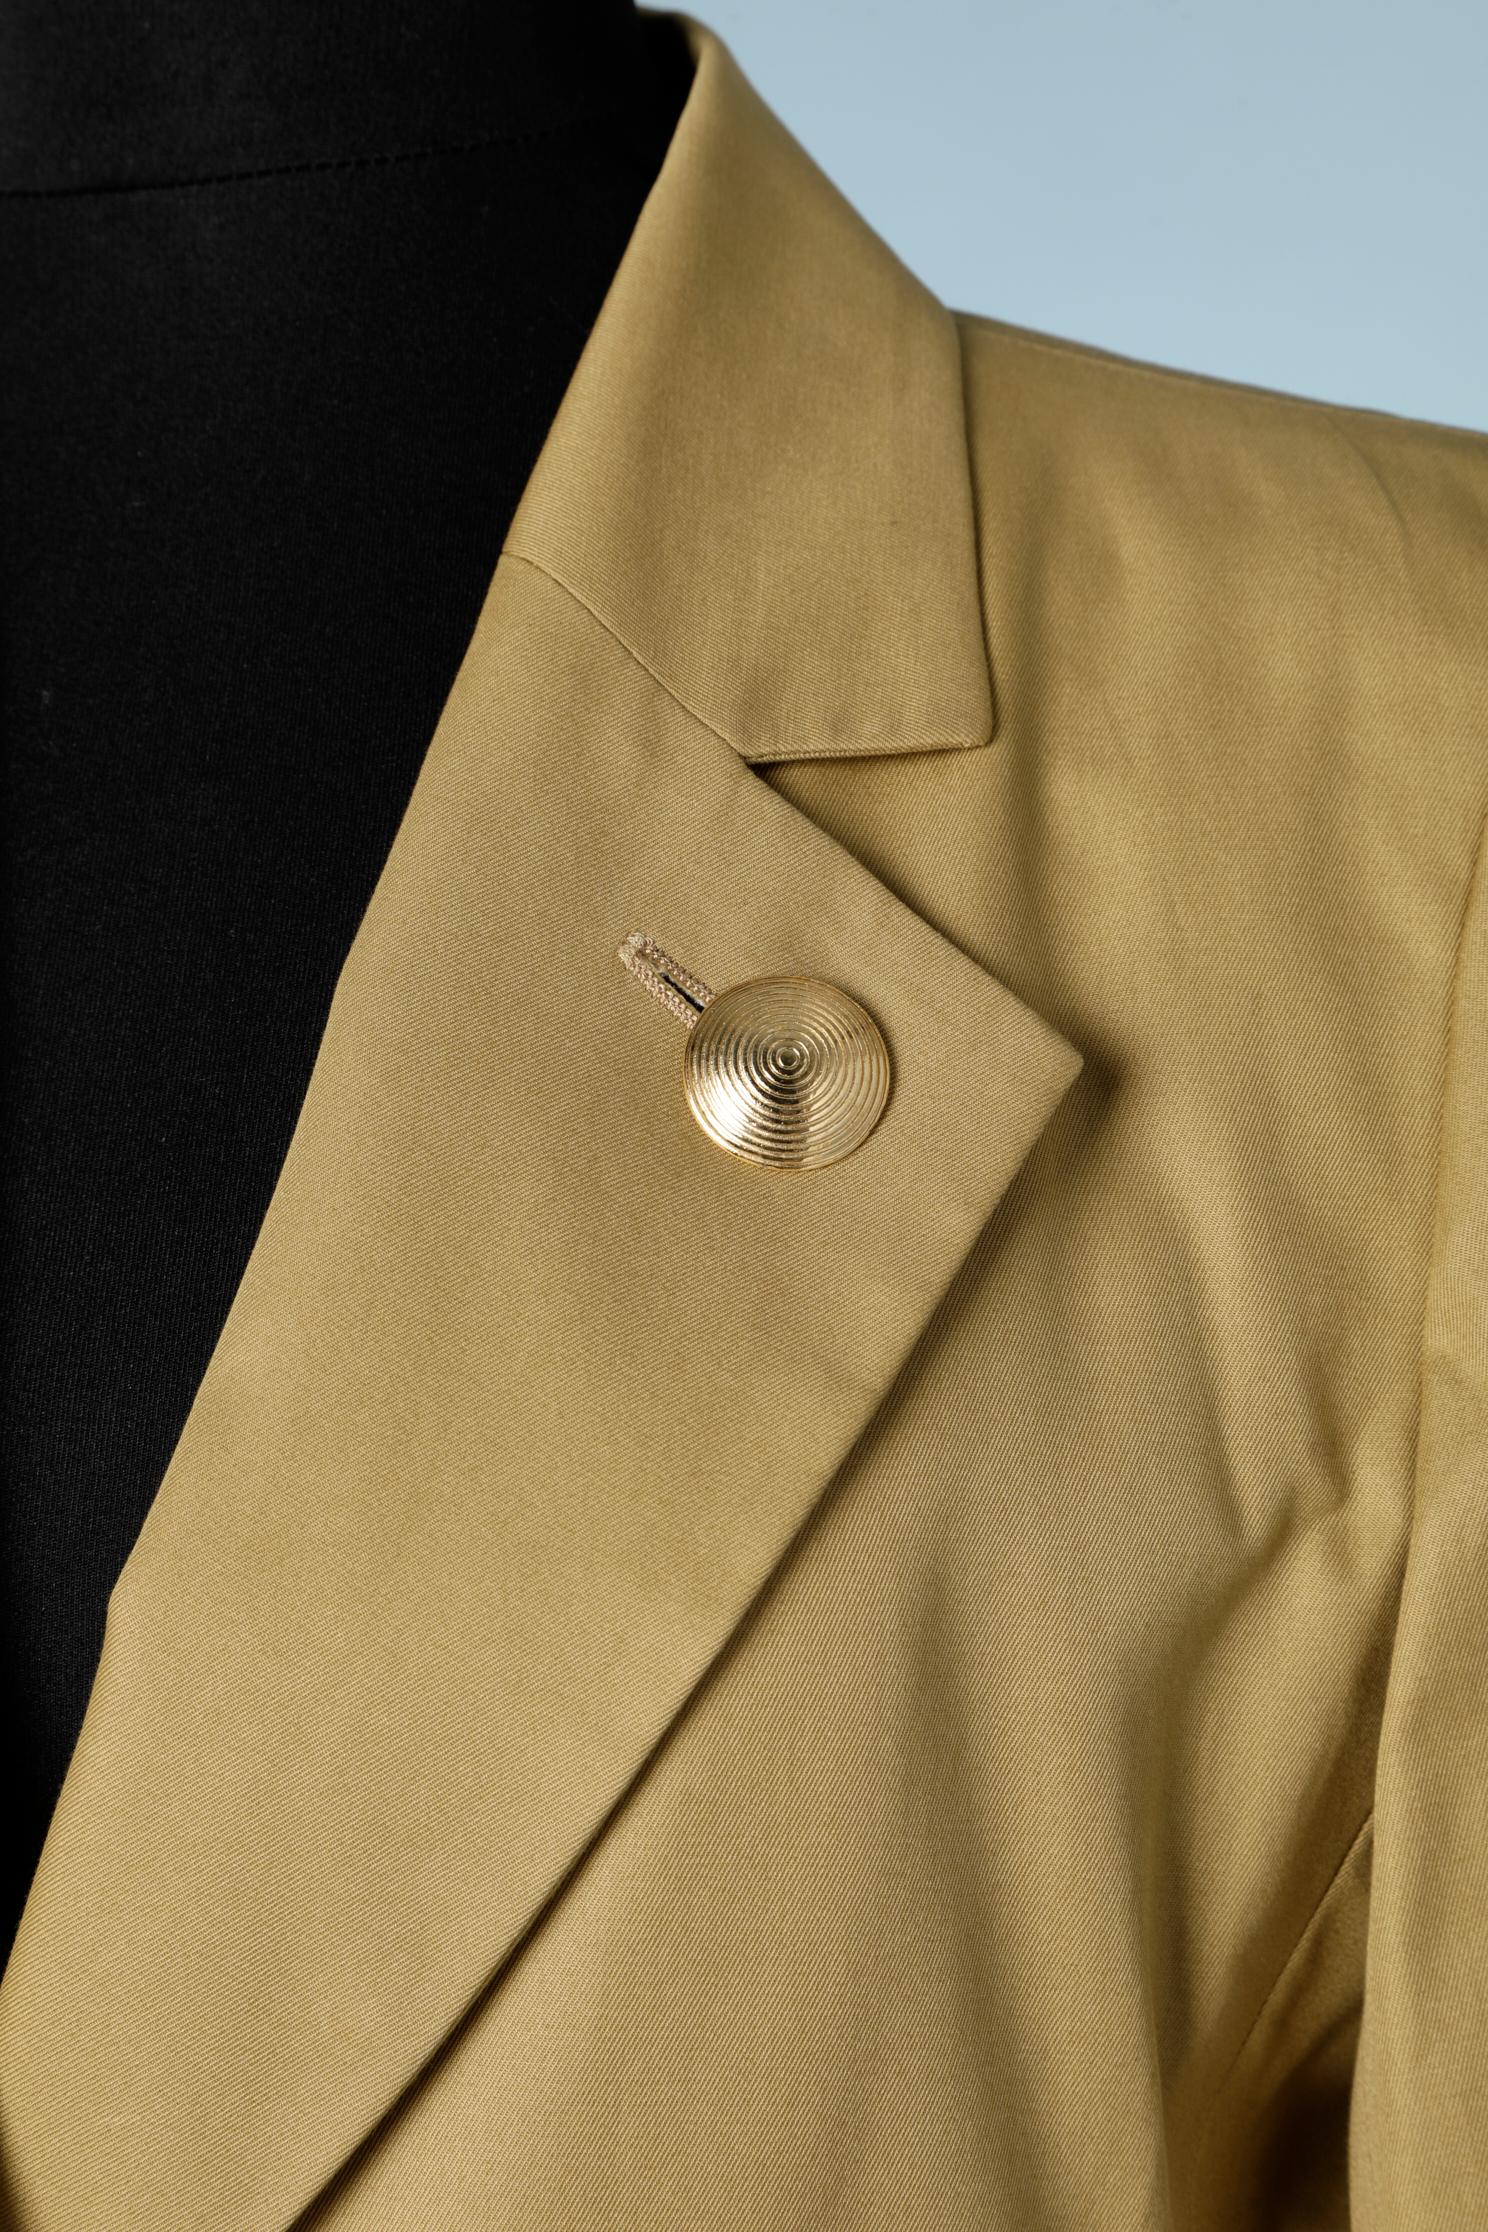 Senfgrüne einreihige Jacke mit goldenen Metallknöpfen und Taschen. Seidenfutter. Knöpfe und Knopfloch im Kragen. 
Größe S